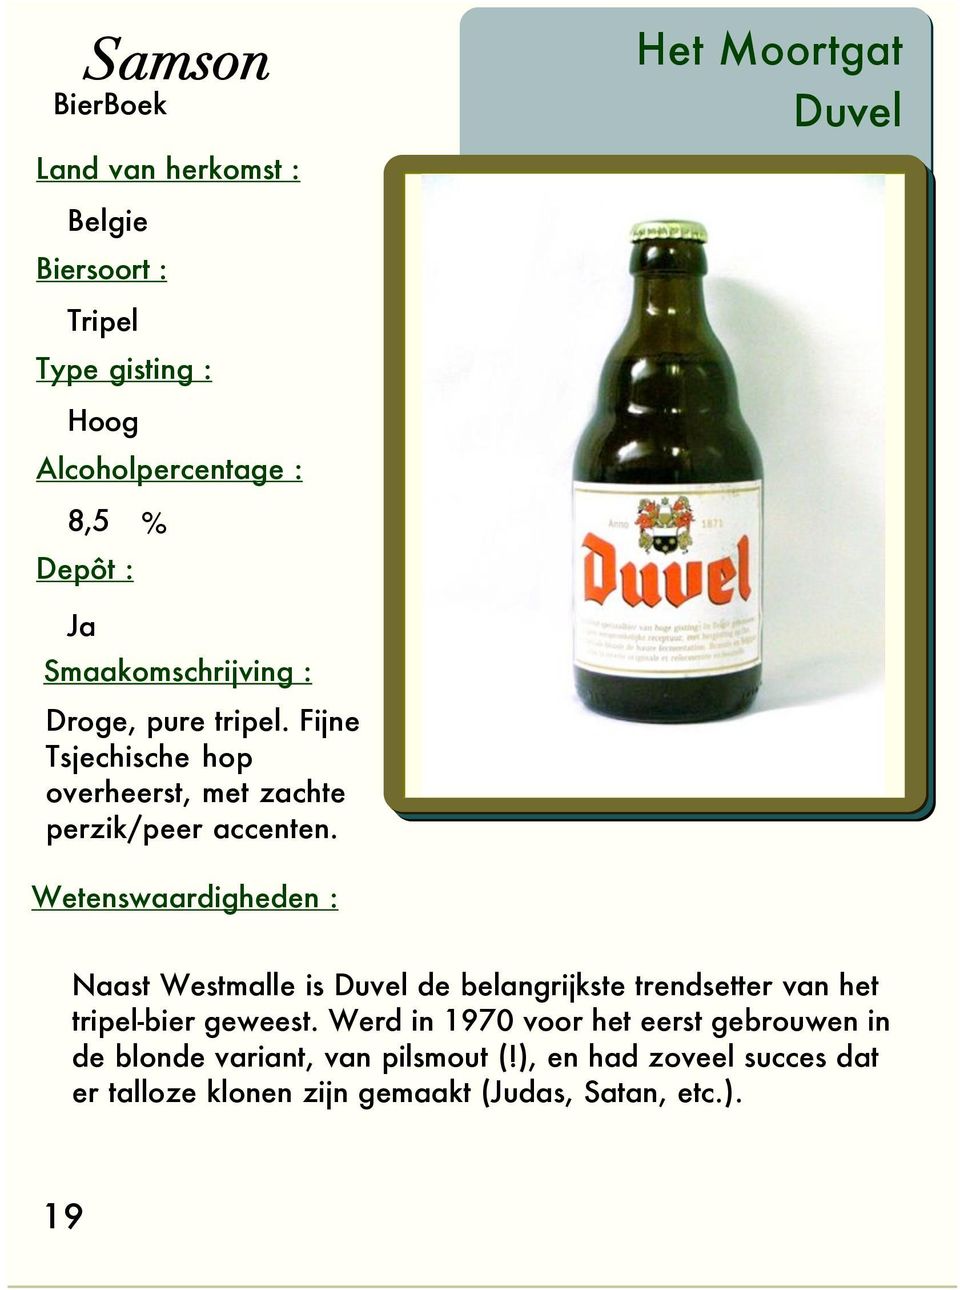 Naast Westmalle is Duvel de belangrijkste trendsetter van het tripel-bier geweest.